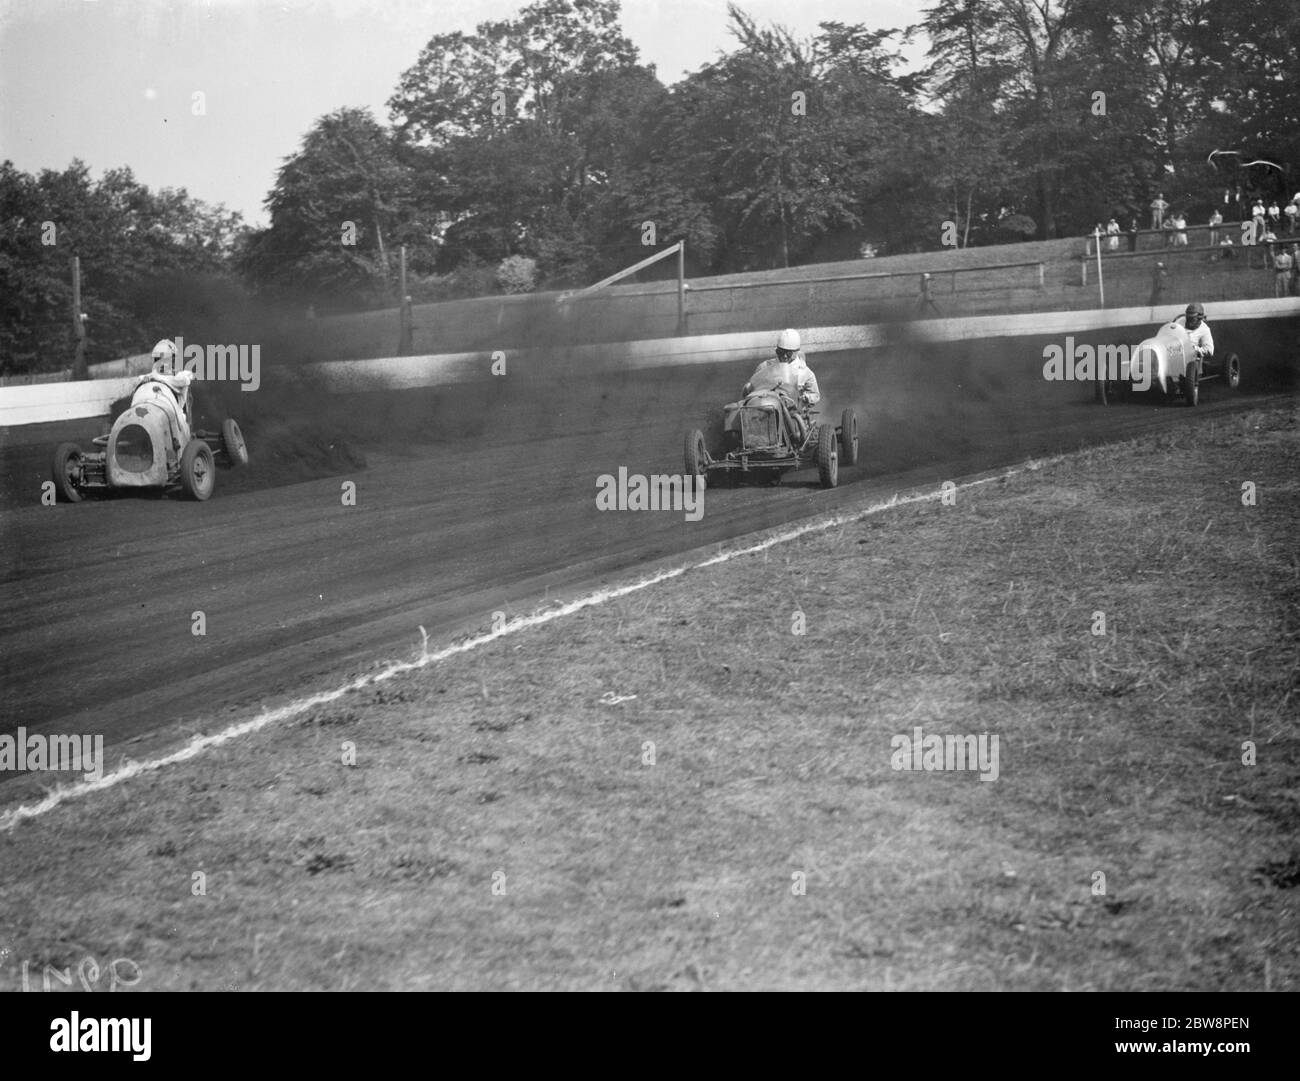 el Gran premio de carreras de coches en miniatura del Palacio de Cristal. Basil de Mattos pierde sus ruedas. 1938 Foto de stock